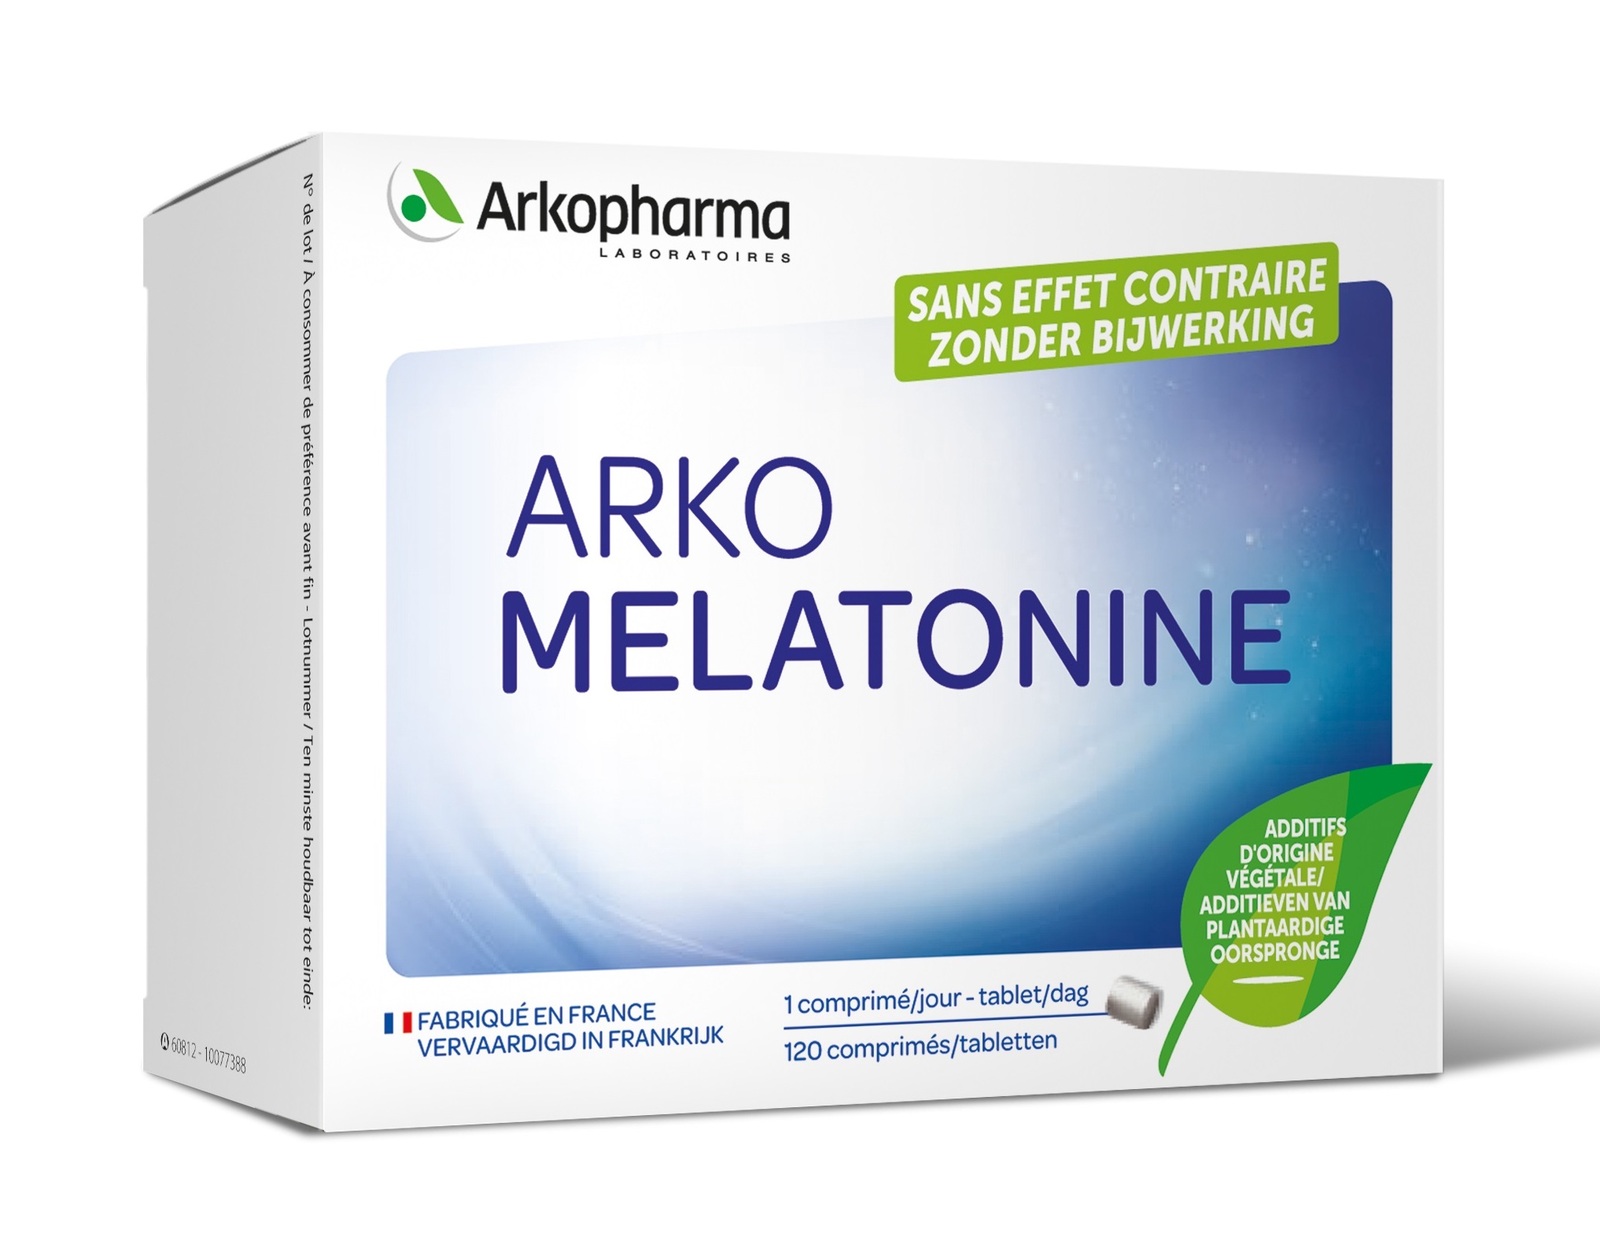 Arkopharma arko melatonine is een voedingssupplement op basis van 0.295 mg melatonine. zonder bijwerking....